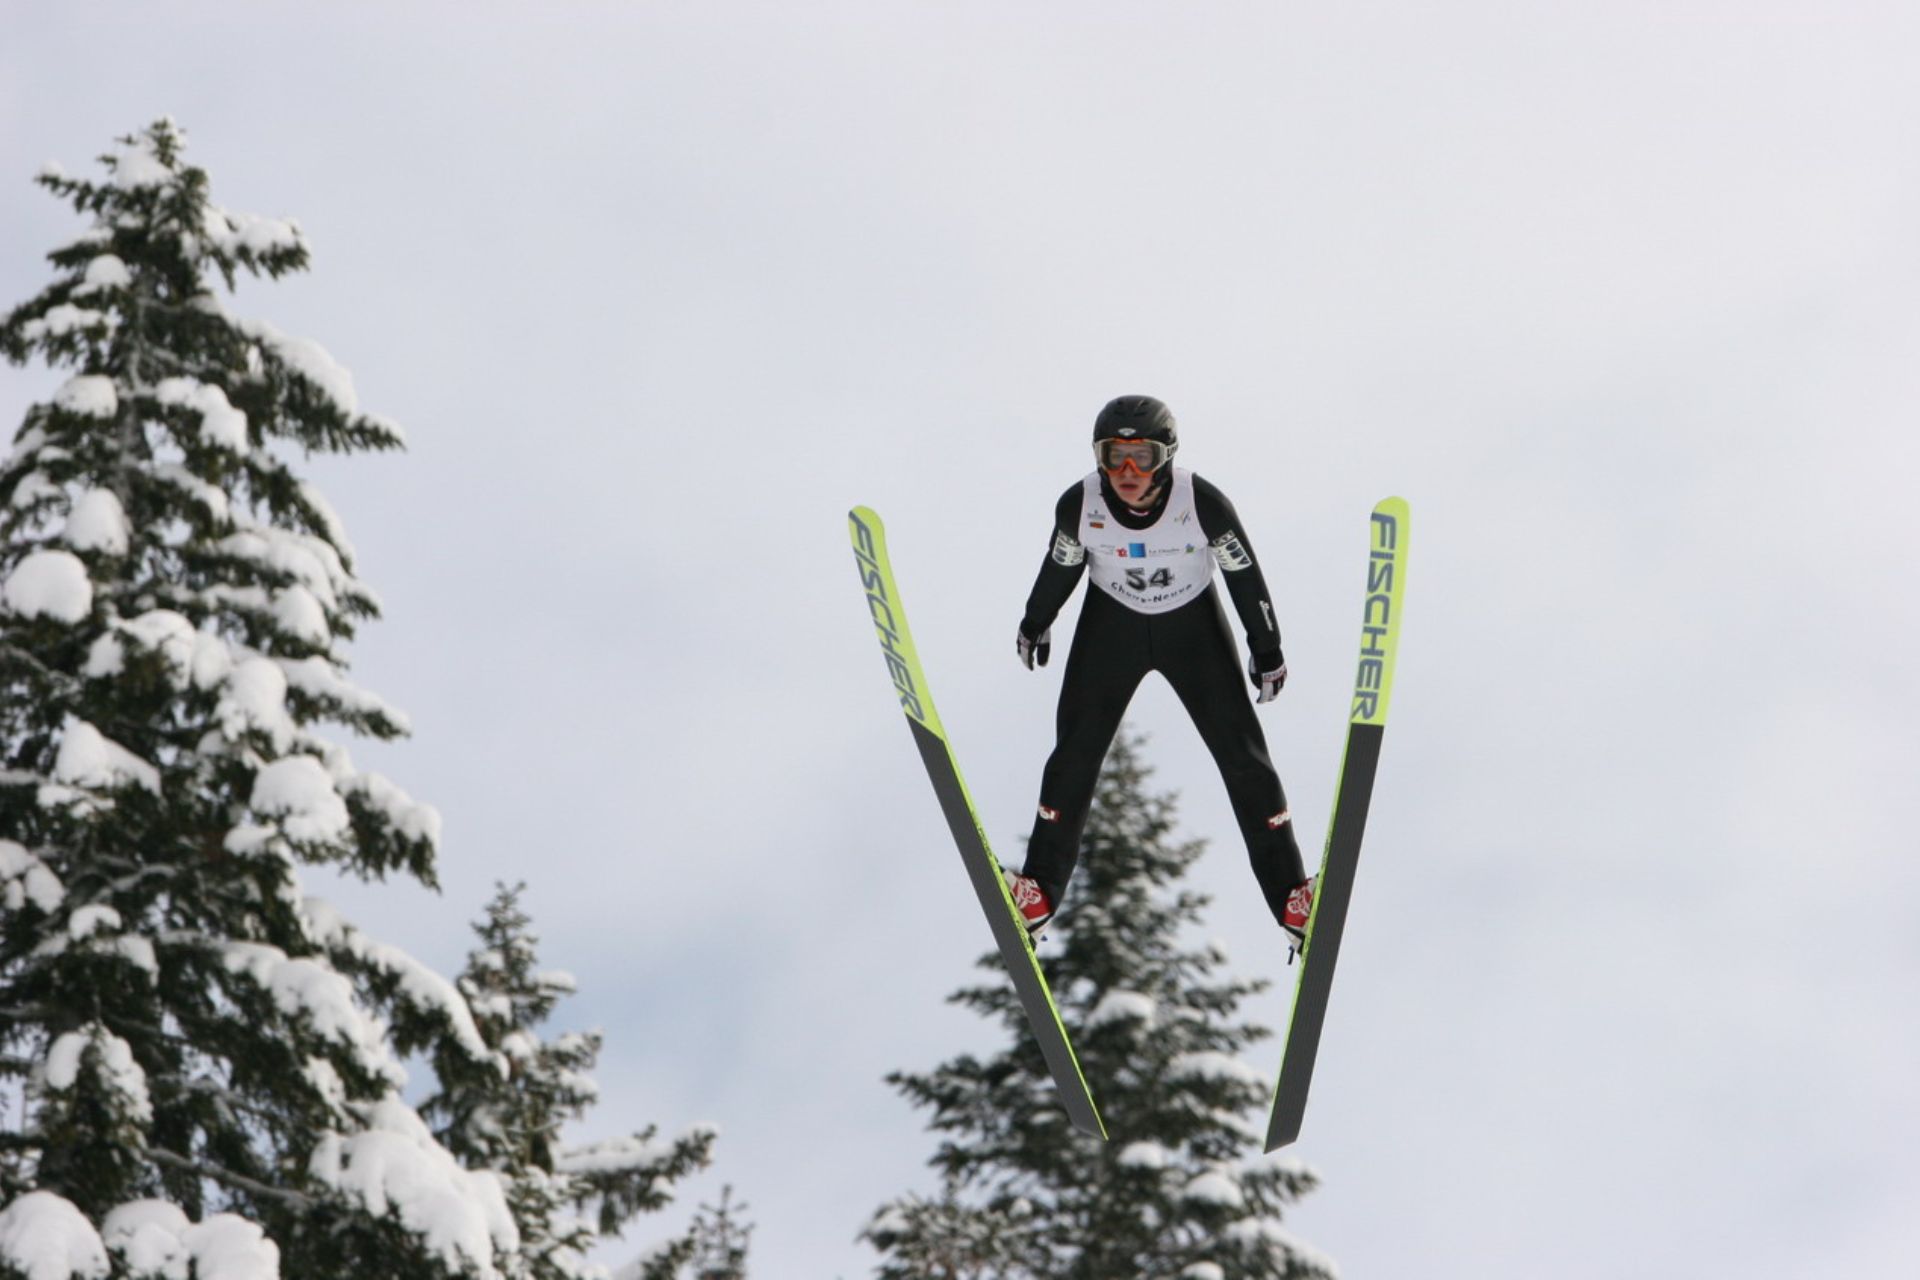 haut-doubs-saut-a-ski-discipline-olympique-frederic-roux-14419